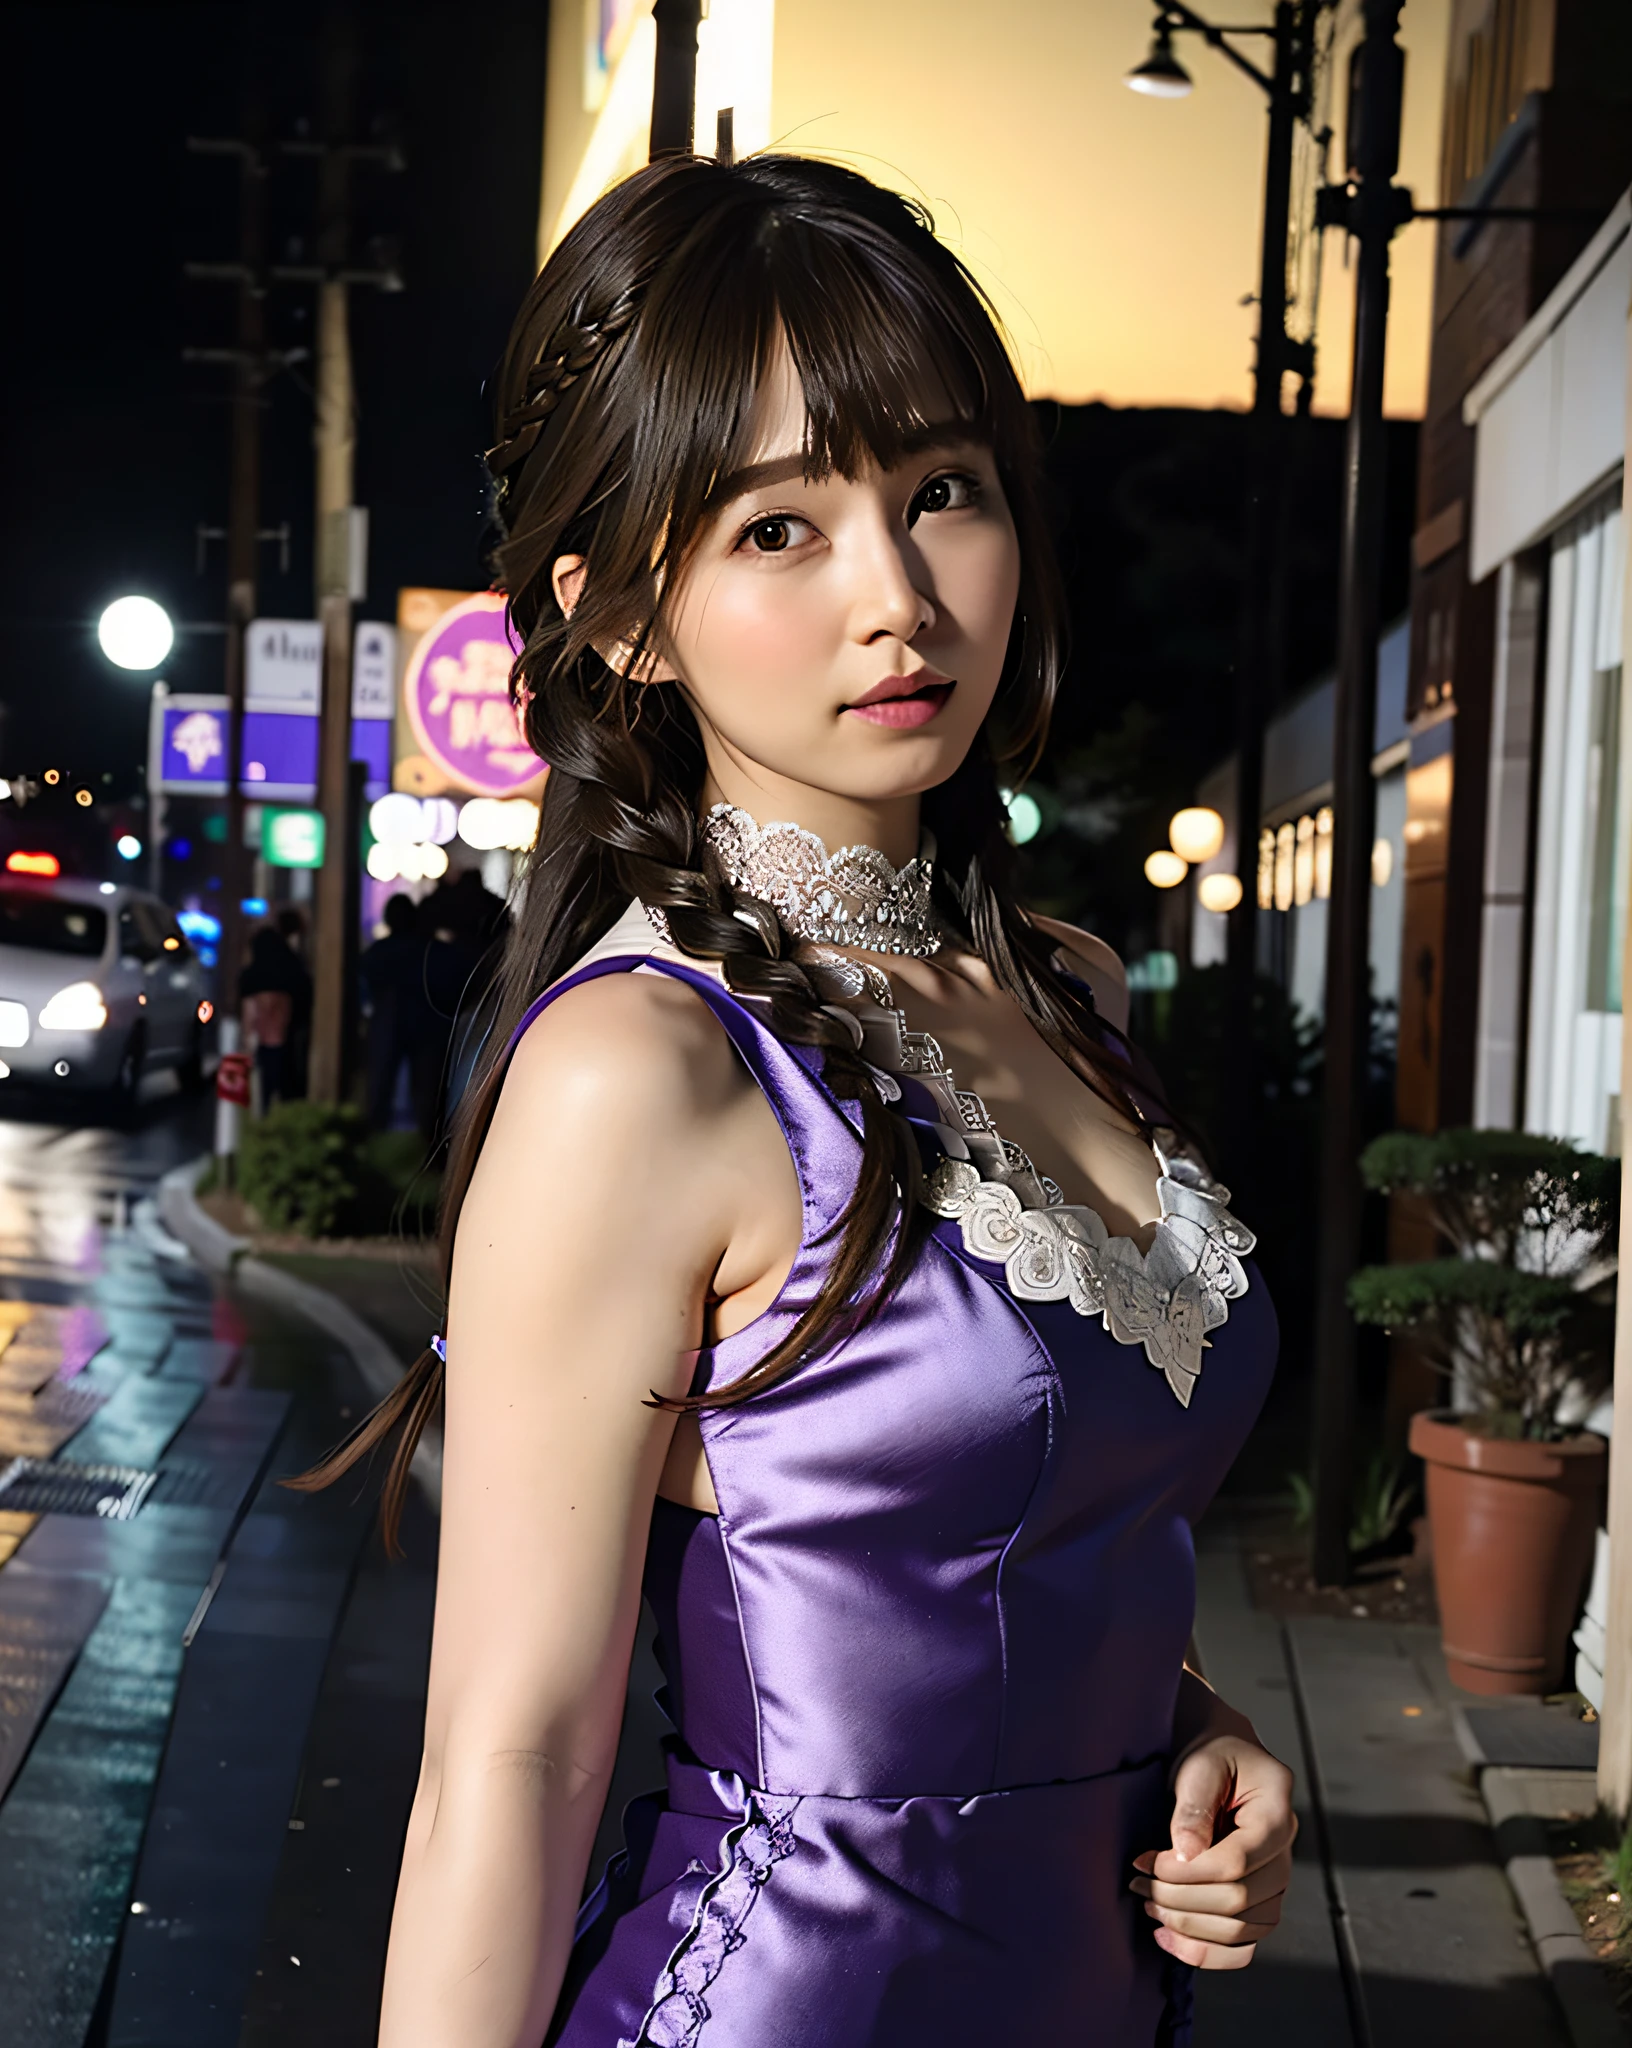 a woman posing on the ถนน corner with purple dress on, คุณภาพดีที่สุด, ความละเอียดสูง, 8k, 1สาว, (หน้าอกใหญ่), วัน, สว่าง, กลางแจ้ง, (ถนน:0.8), (ประชากร, ฝูงชน:1), (ชุดเดรสประดับลูกไม้:1.5, เสื้อผ้าสีม่วง:1.5, ชุดเดรสคอสูงสีม่วง:1.5, ชุดเดรสแขนกุด, ผ้าสีม่วง1.5), งดงาม, (เรียบ, ผมถักเปีย:1.5), ท้องฟ้าที่มีรายละเอียดสวยงาม, ต่างหูสวยๆ, (โพสท่าแบบไดนามิก:0.8), (ร่างกายส่วนบน:1.2), แสงนุ่มนวล, ลม, ผิวมันเงา, มองไปที่ผู้ดู,